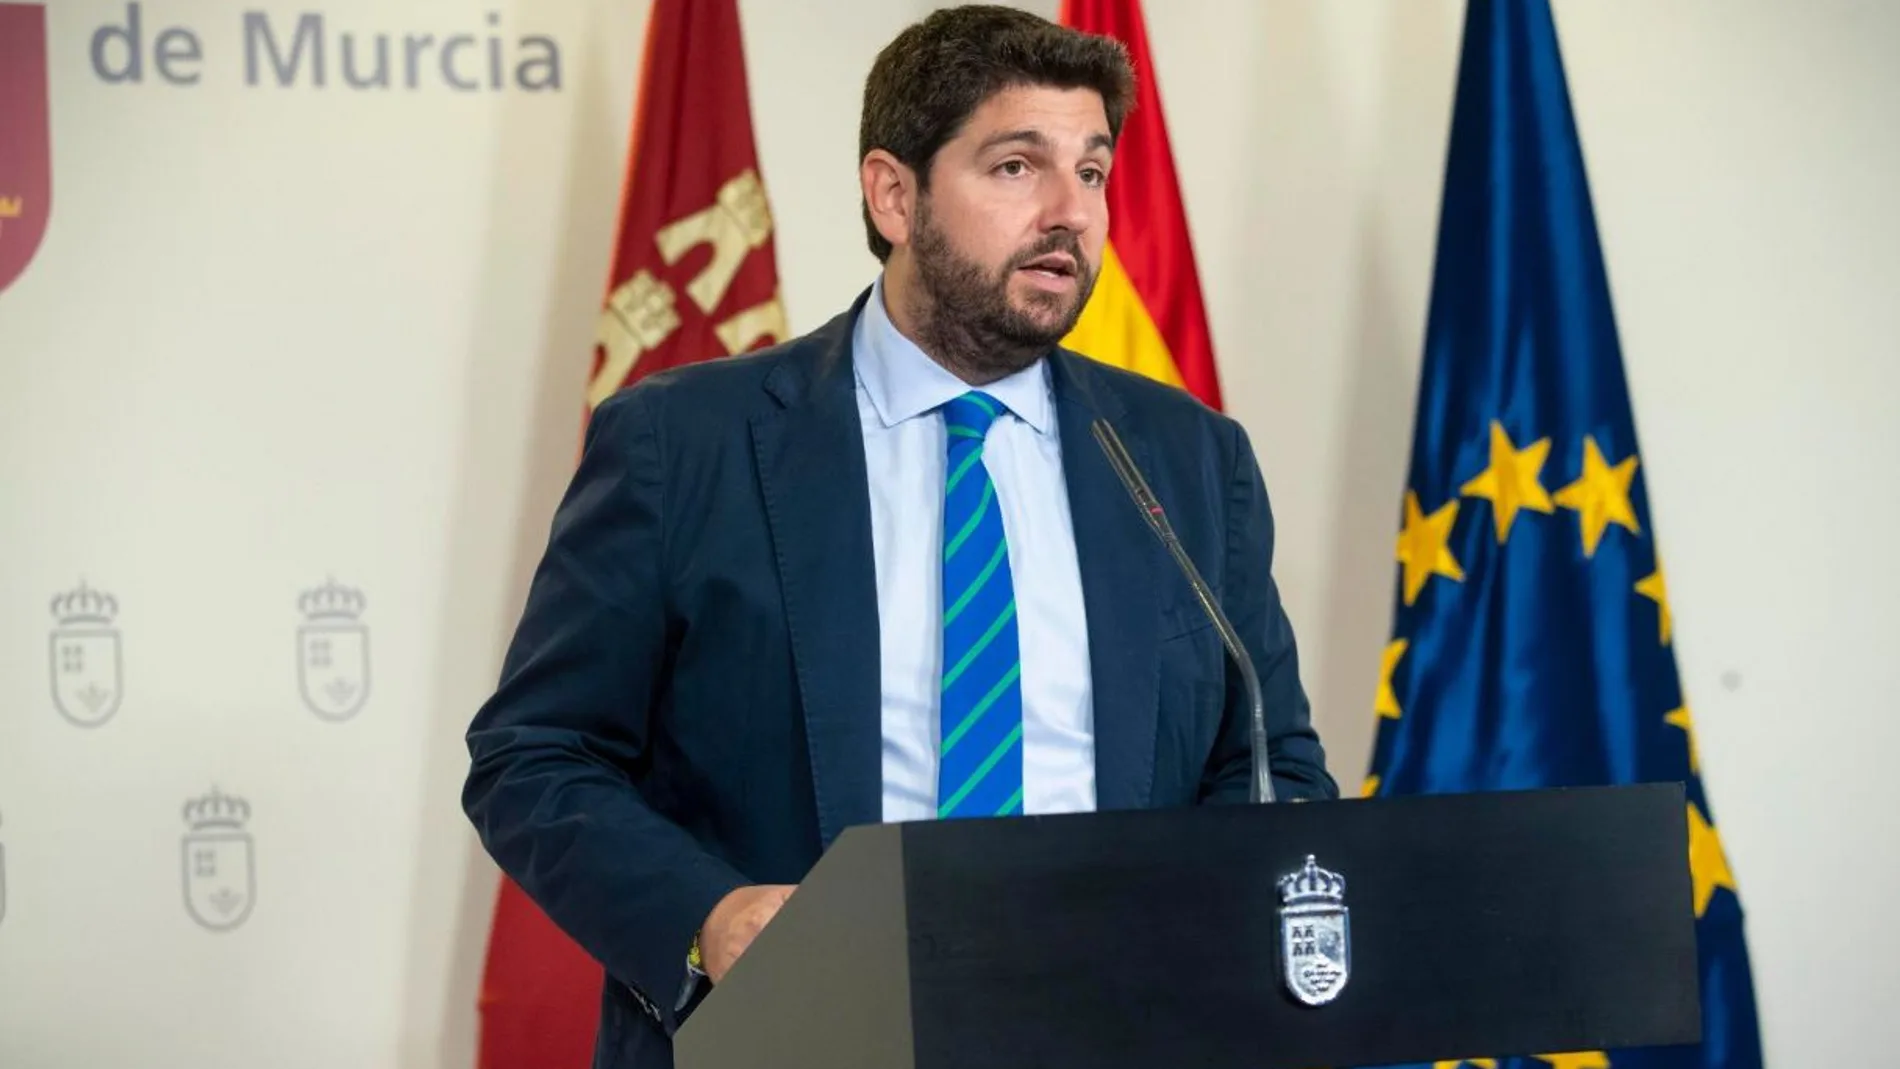 El presidente de la Región en funciones, Fernando López Miras, confió ayer en que se extienda el acuerdo de gobernabilidad alcanzado con Cs en la Asamblea hasta la formación del nuevo Ejecutivo murciano